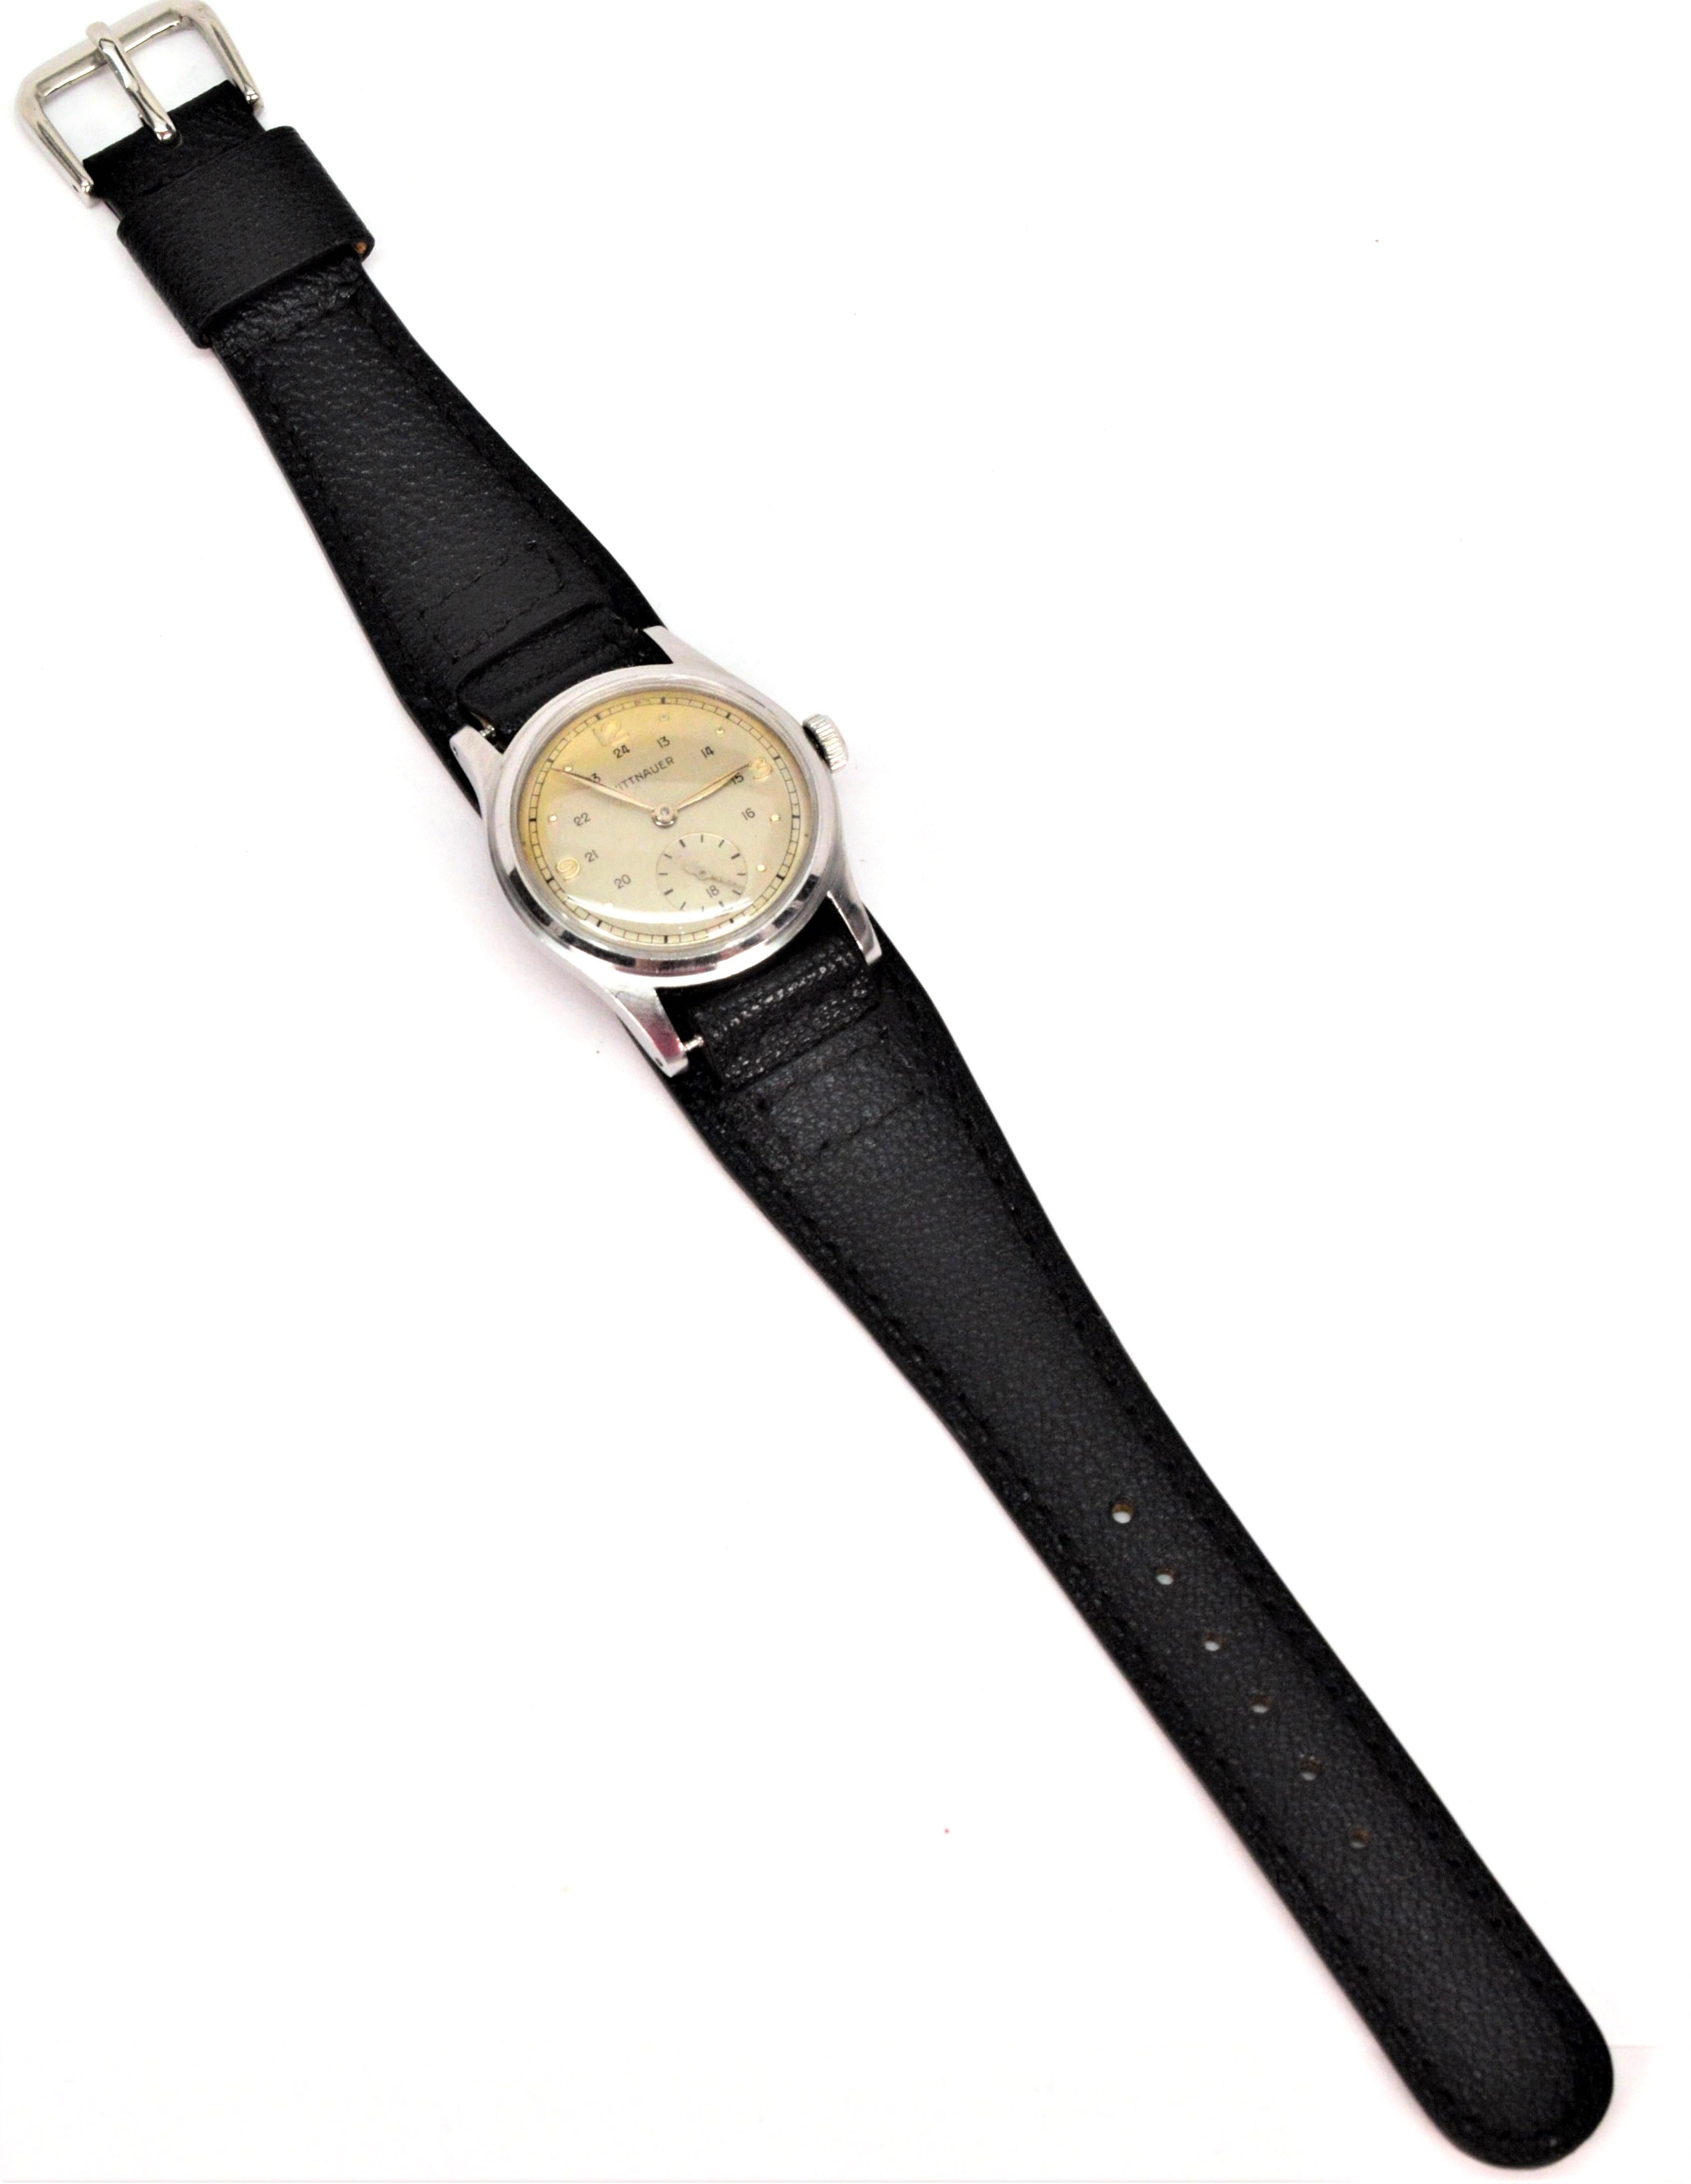  Cette montre-bracelet en acier pour homme de Whittnauer, de style Seconde Guerre mondiale, a été bien conservée. D'une taille de 31 mm, ce garde-temps compact et dévoué, en état d'origine, est doté d'index des quarts d'heure numérotés, d'aiguilles